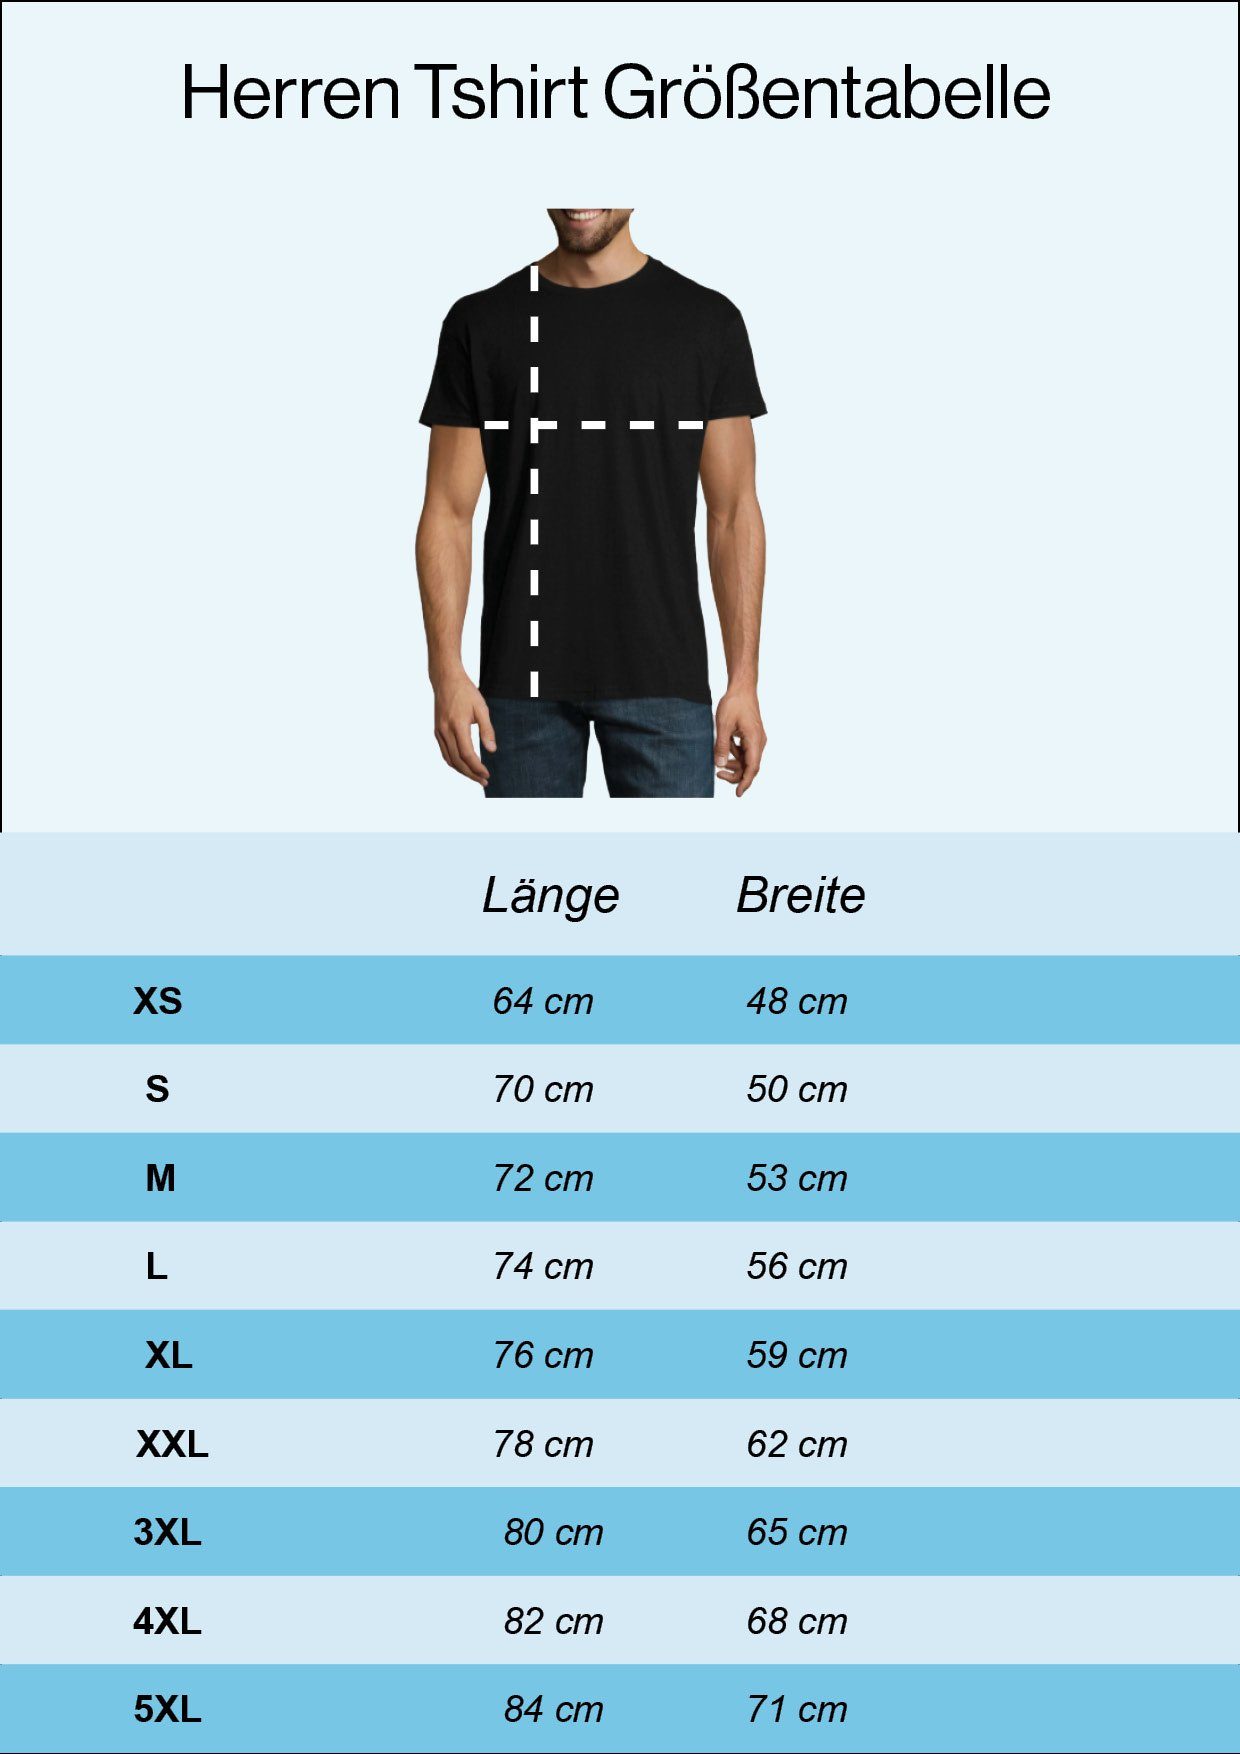 mit Vegan Youth Herren Weiß T-Shirt Frontprint Designz trendigem Shirt